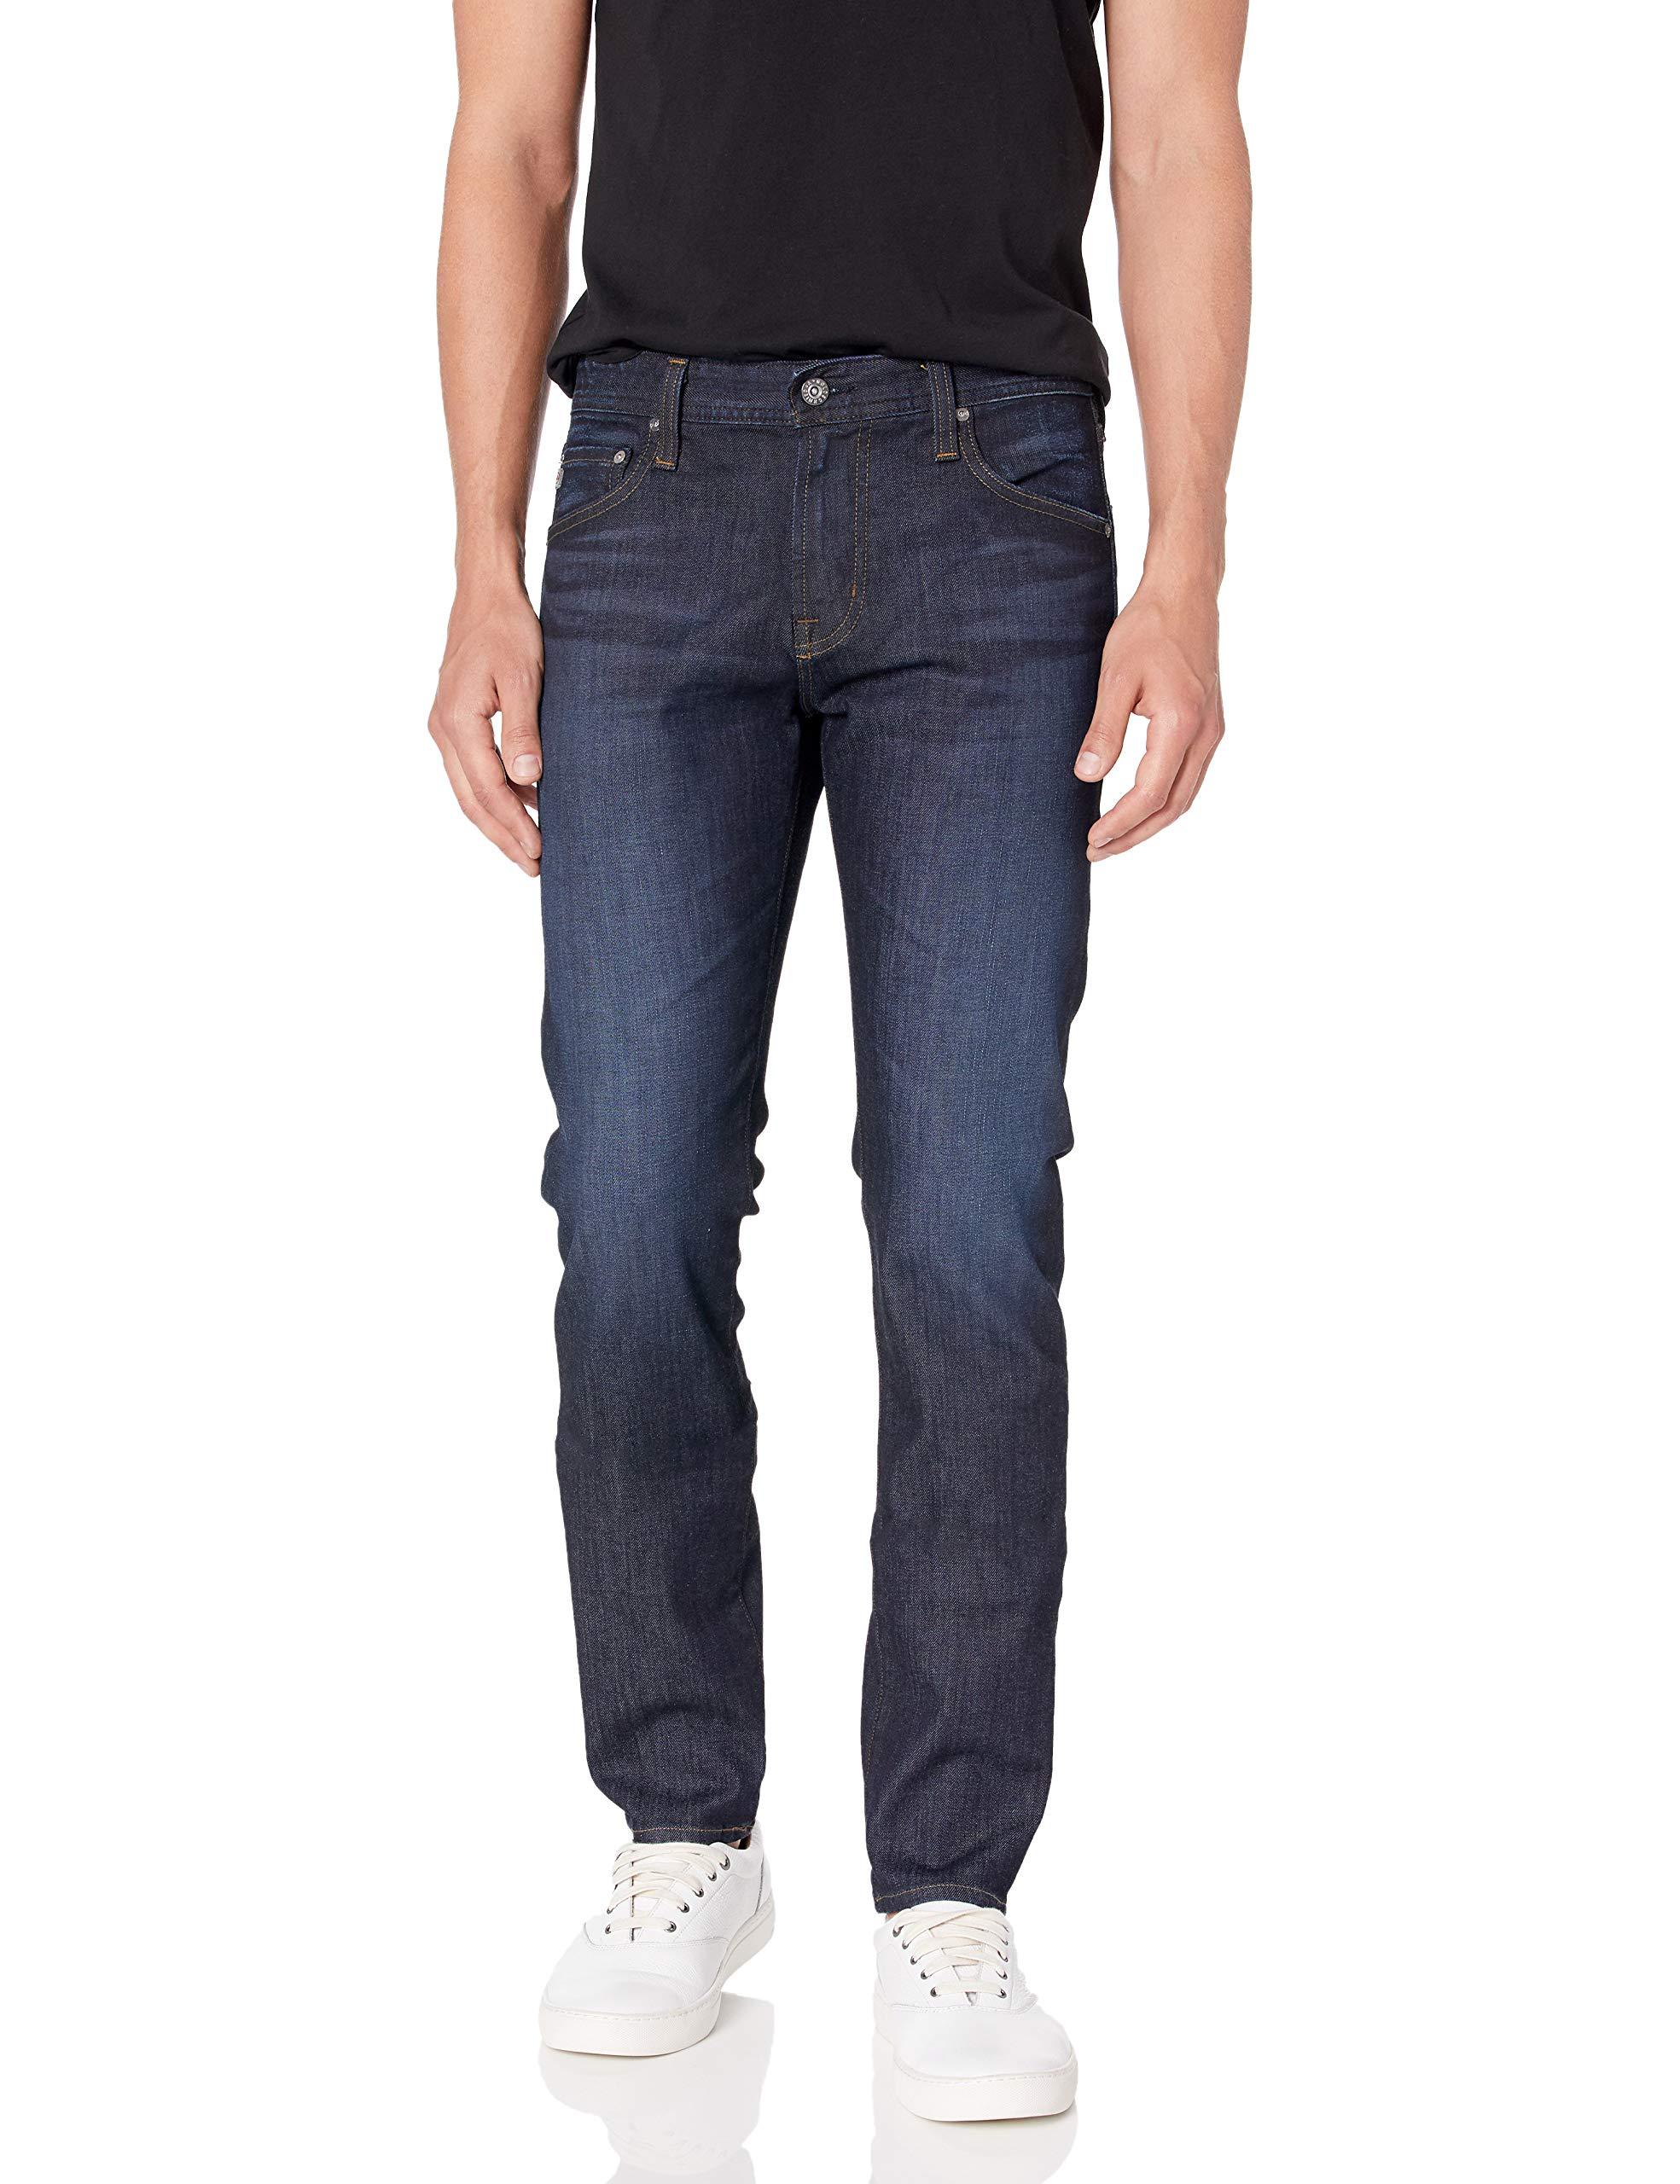 AG Jeans The Dylan Slim Skinny Leg Fxd Denim Pant in Blue for Men - Lyst